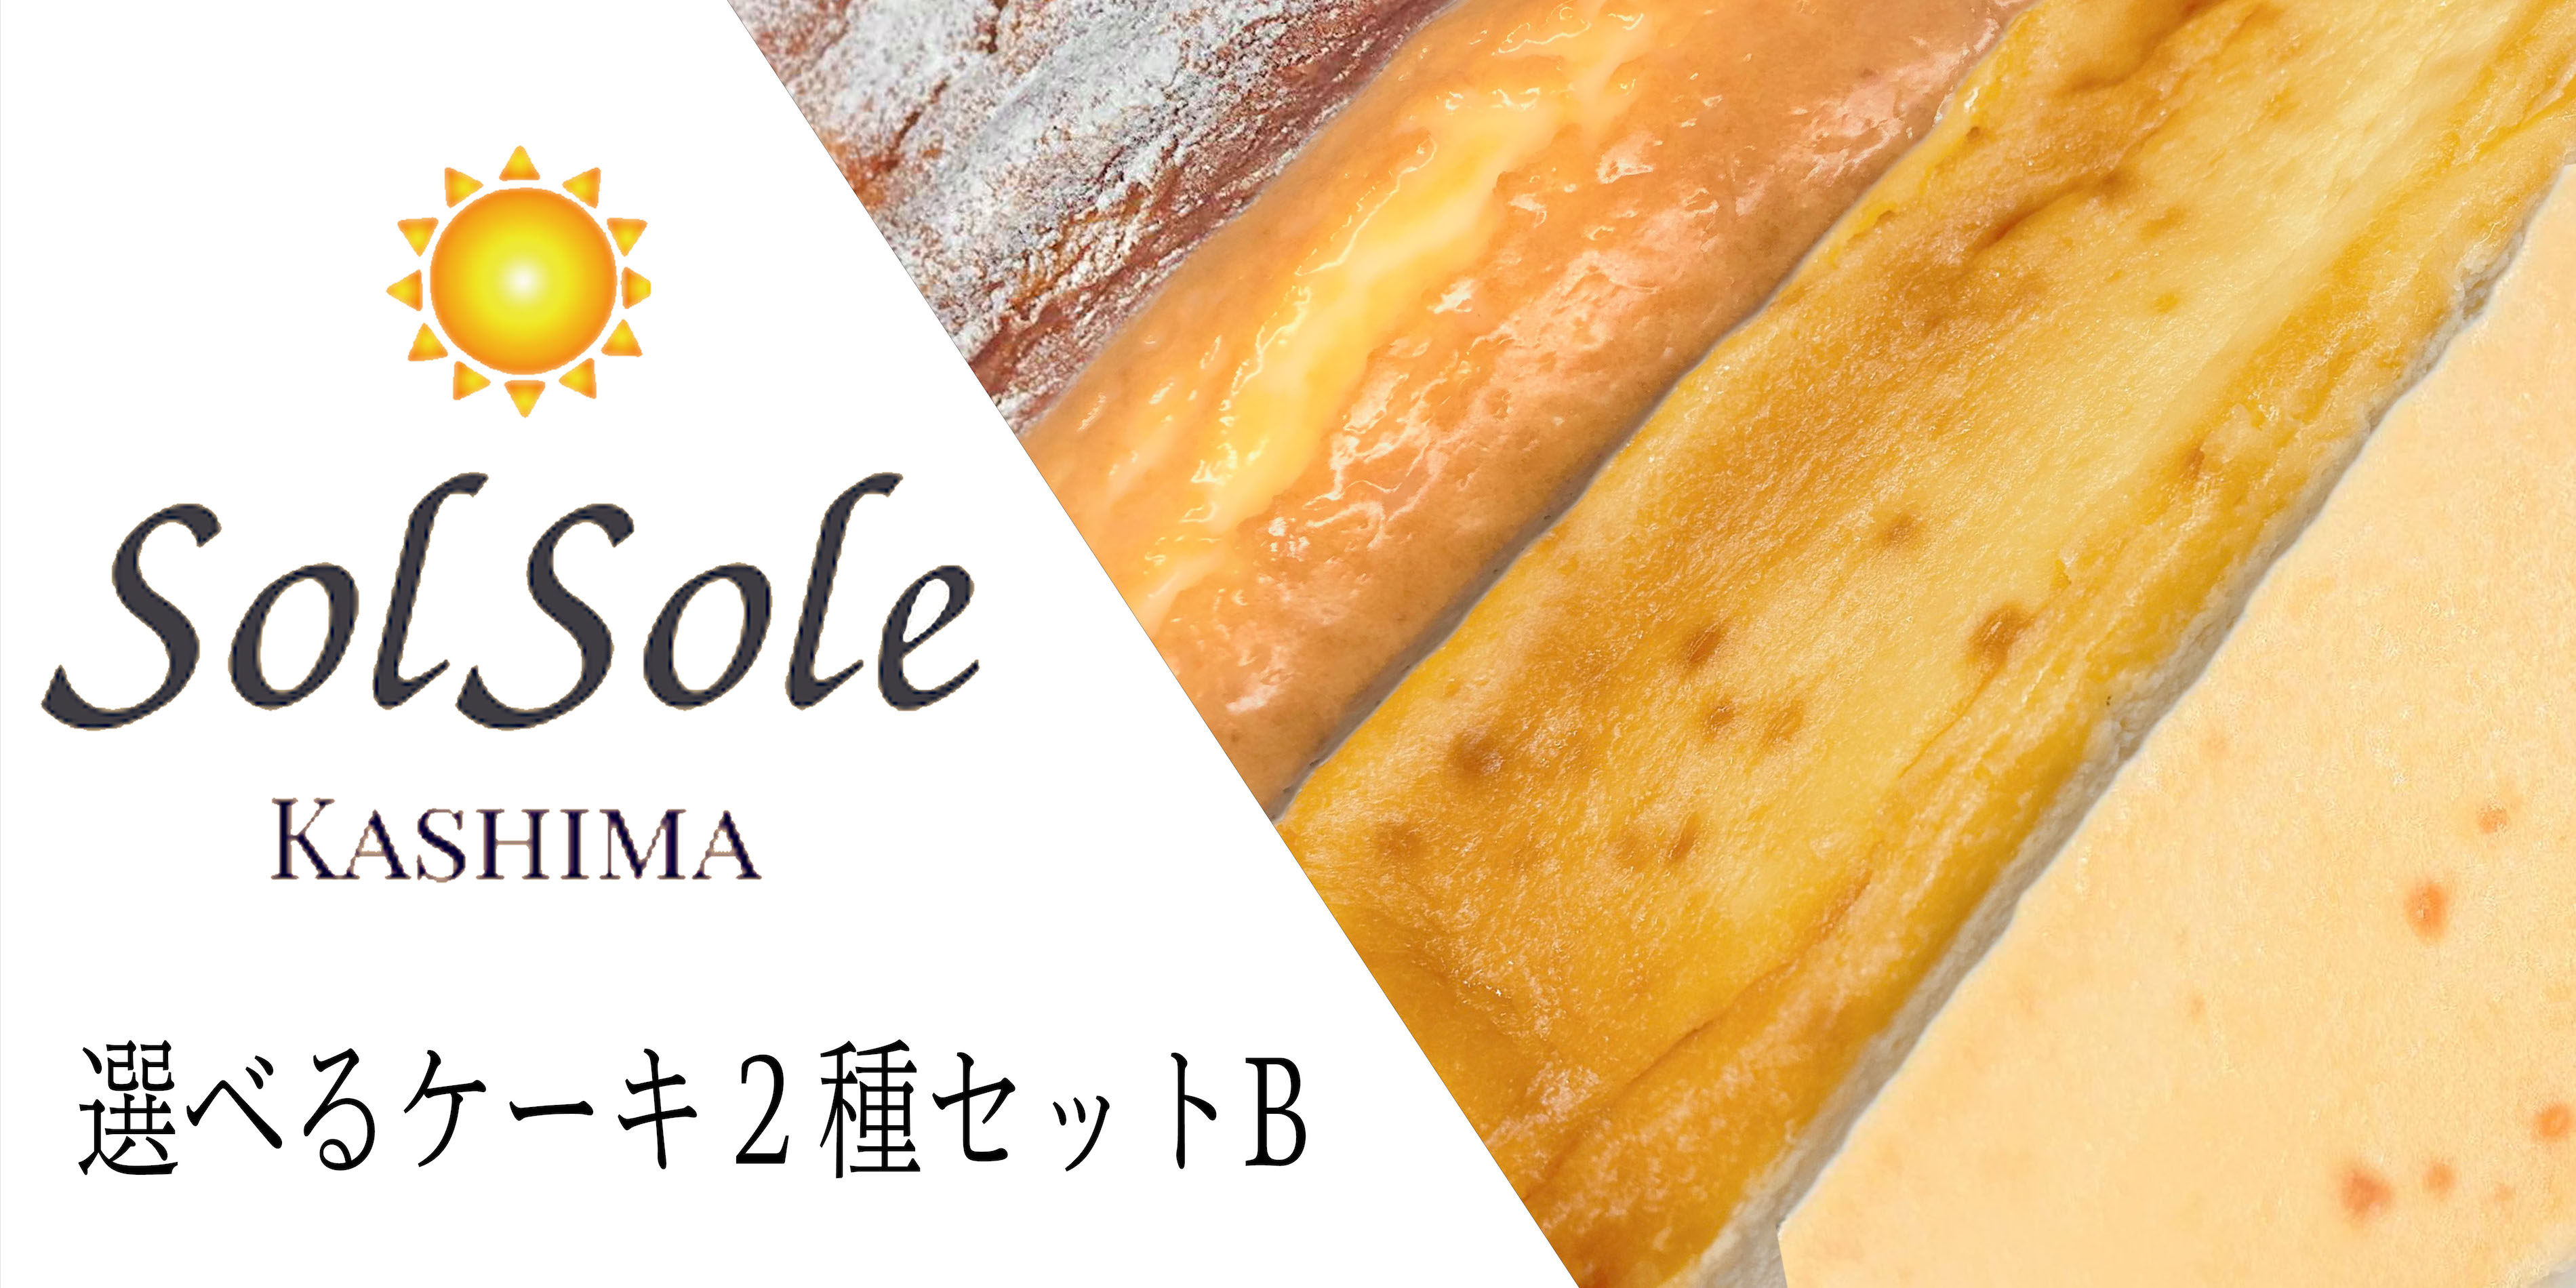 【ふるさと納税】Sol sole の 選べる ケーキ 2種 セットB 無添加 スイーツ デザート 茨城県 鹿嶋市 人気 ケーキ 送料無料 （KBM-6）